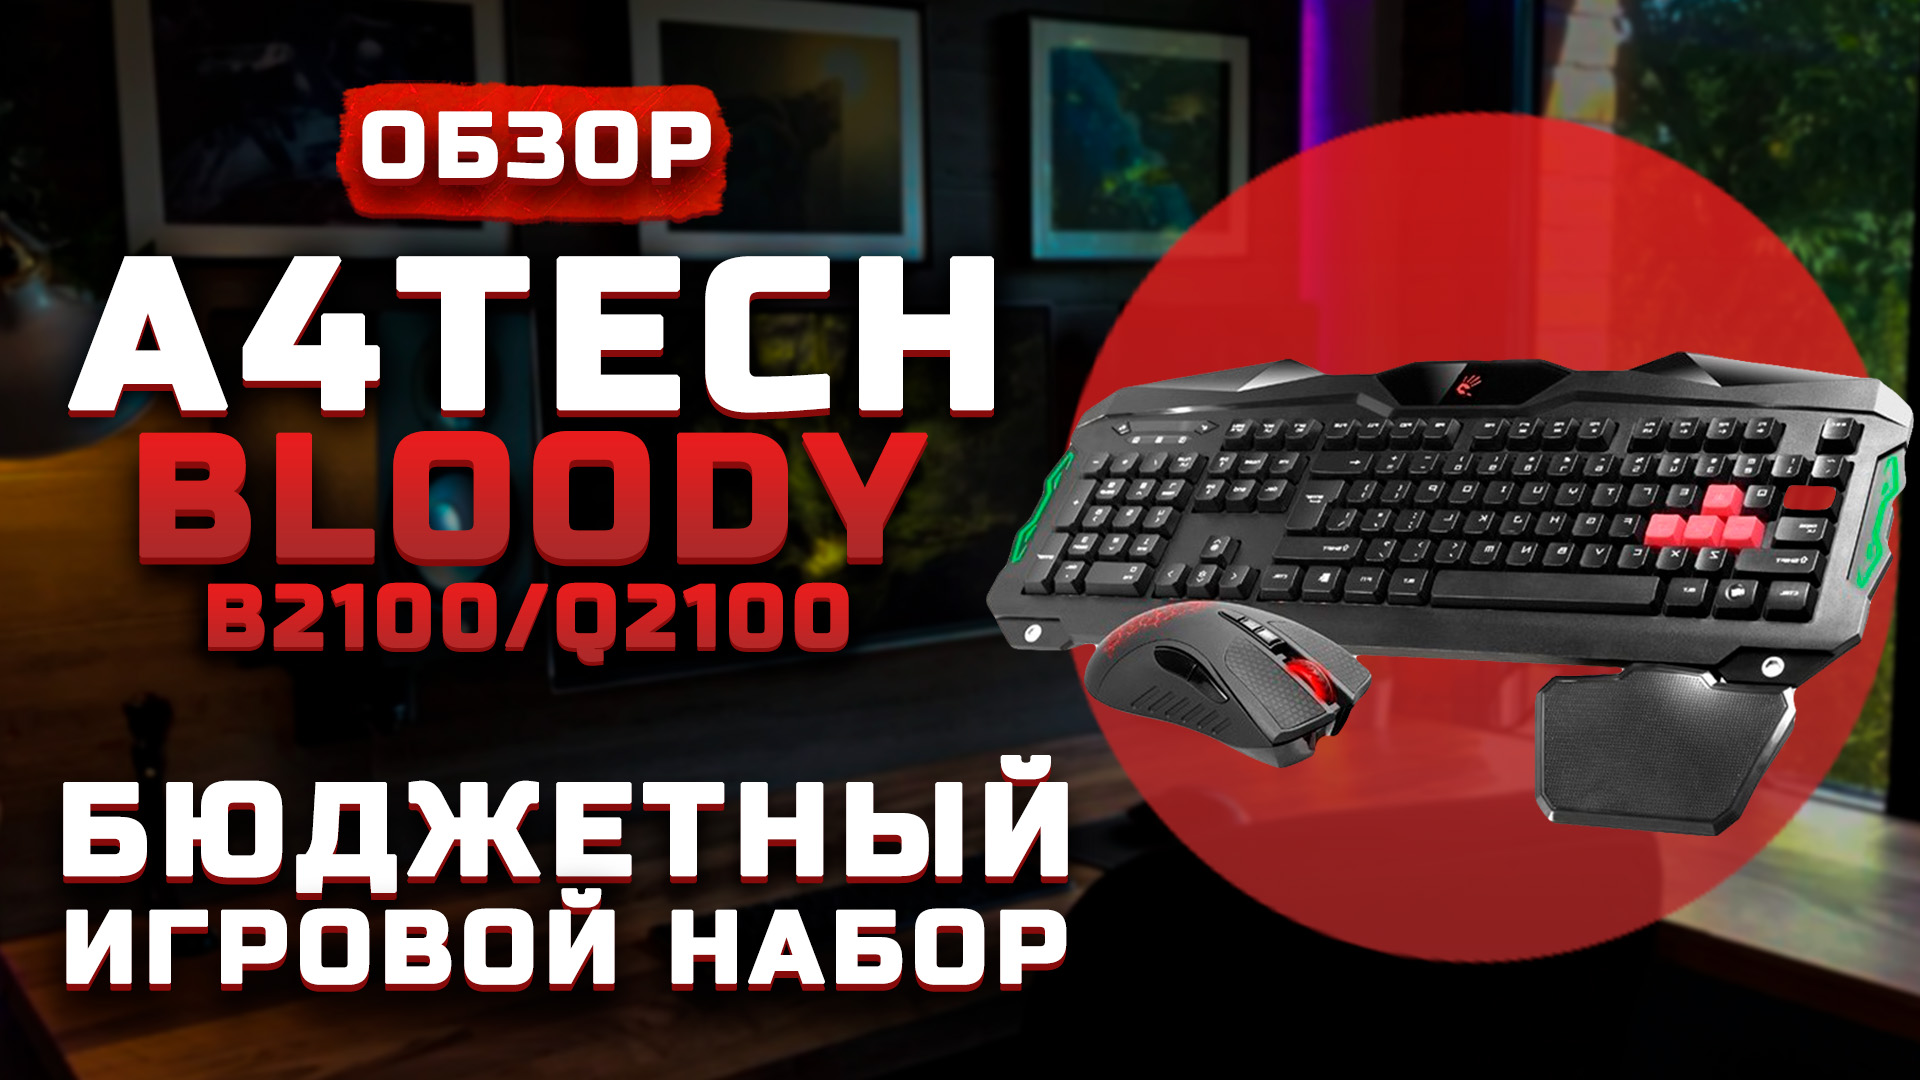 Обзор A4tech Bloody B2100/Q2100 Gamer Q210+Q9 | Бюджетный игровой набор